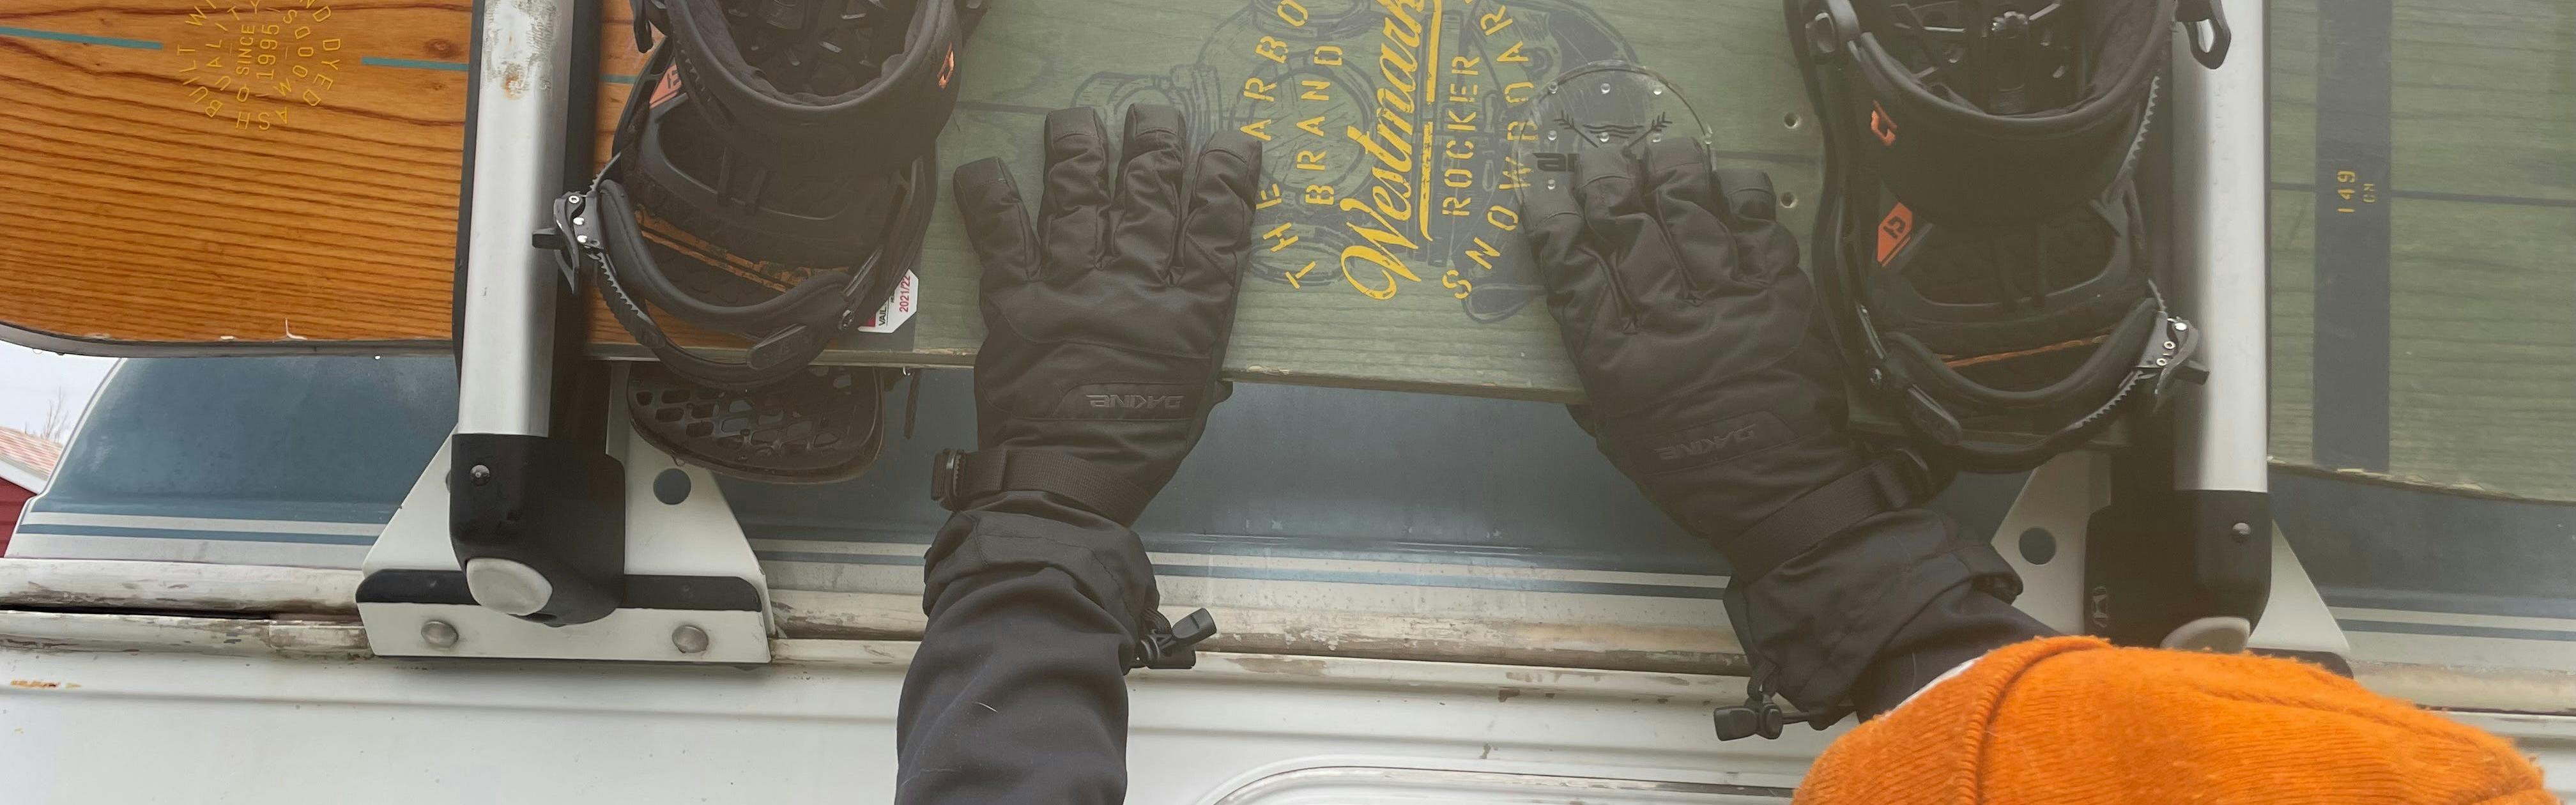 The Dakine Men's Blazer Gloves grabbing a snowboard. 